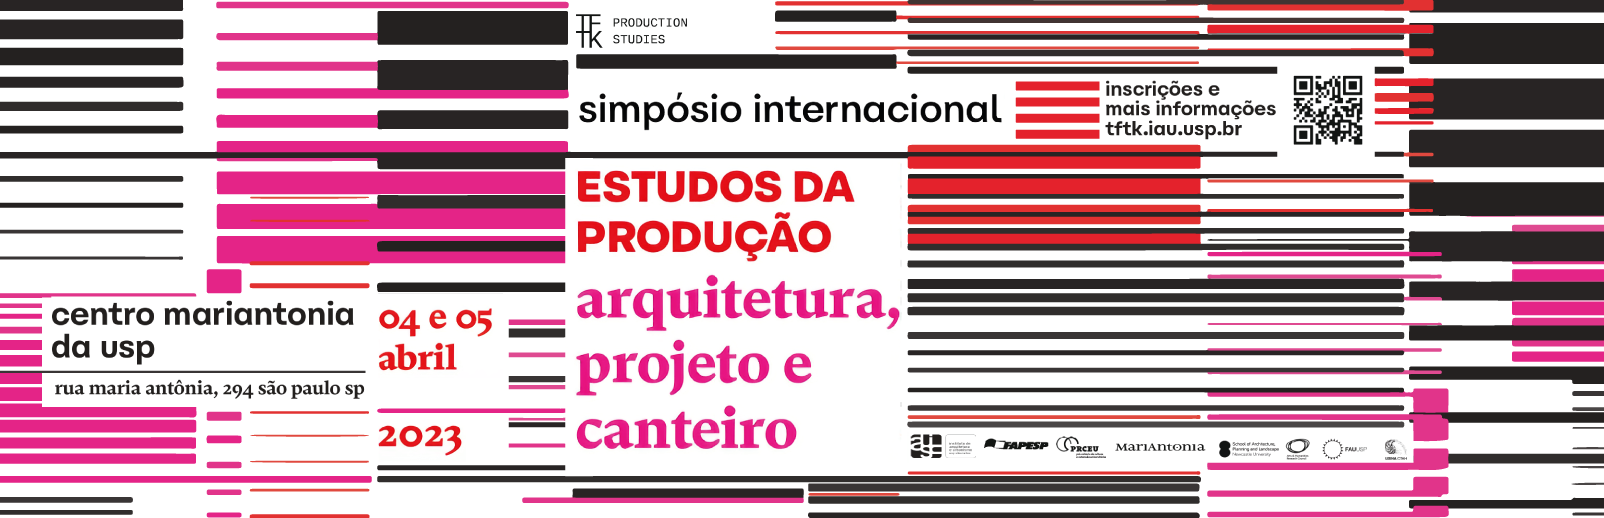 Simpósio internacional de estudos da produção: arquitetura, projeto e canteiro 